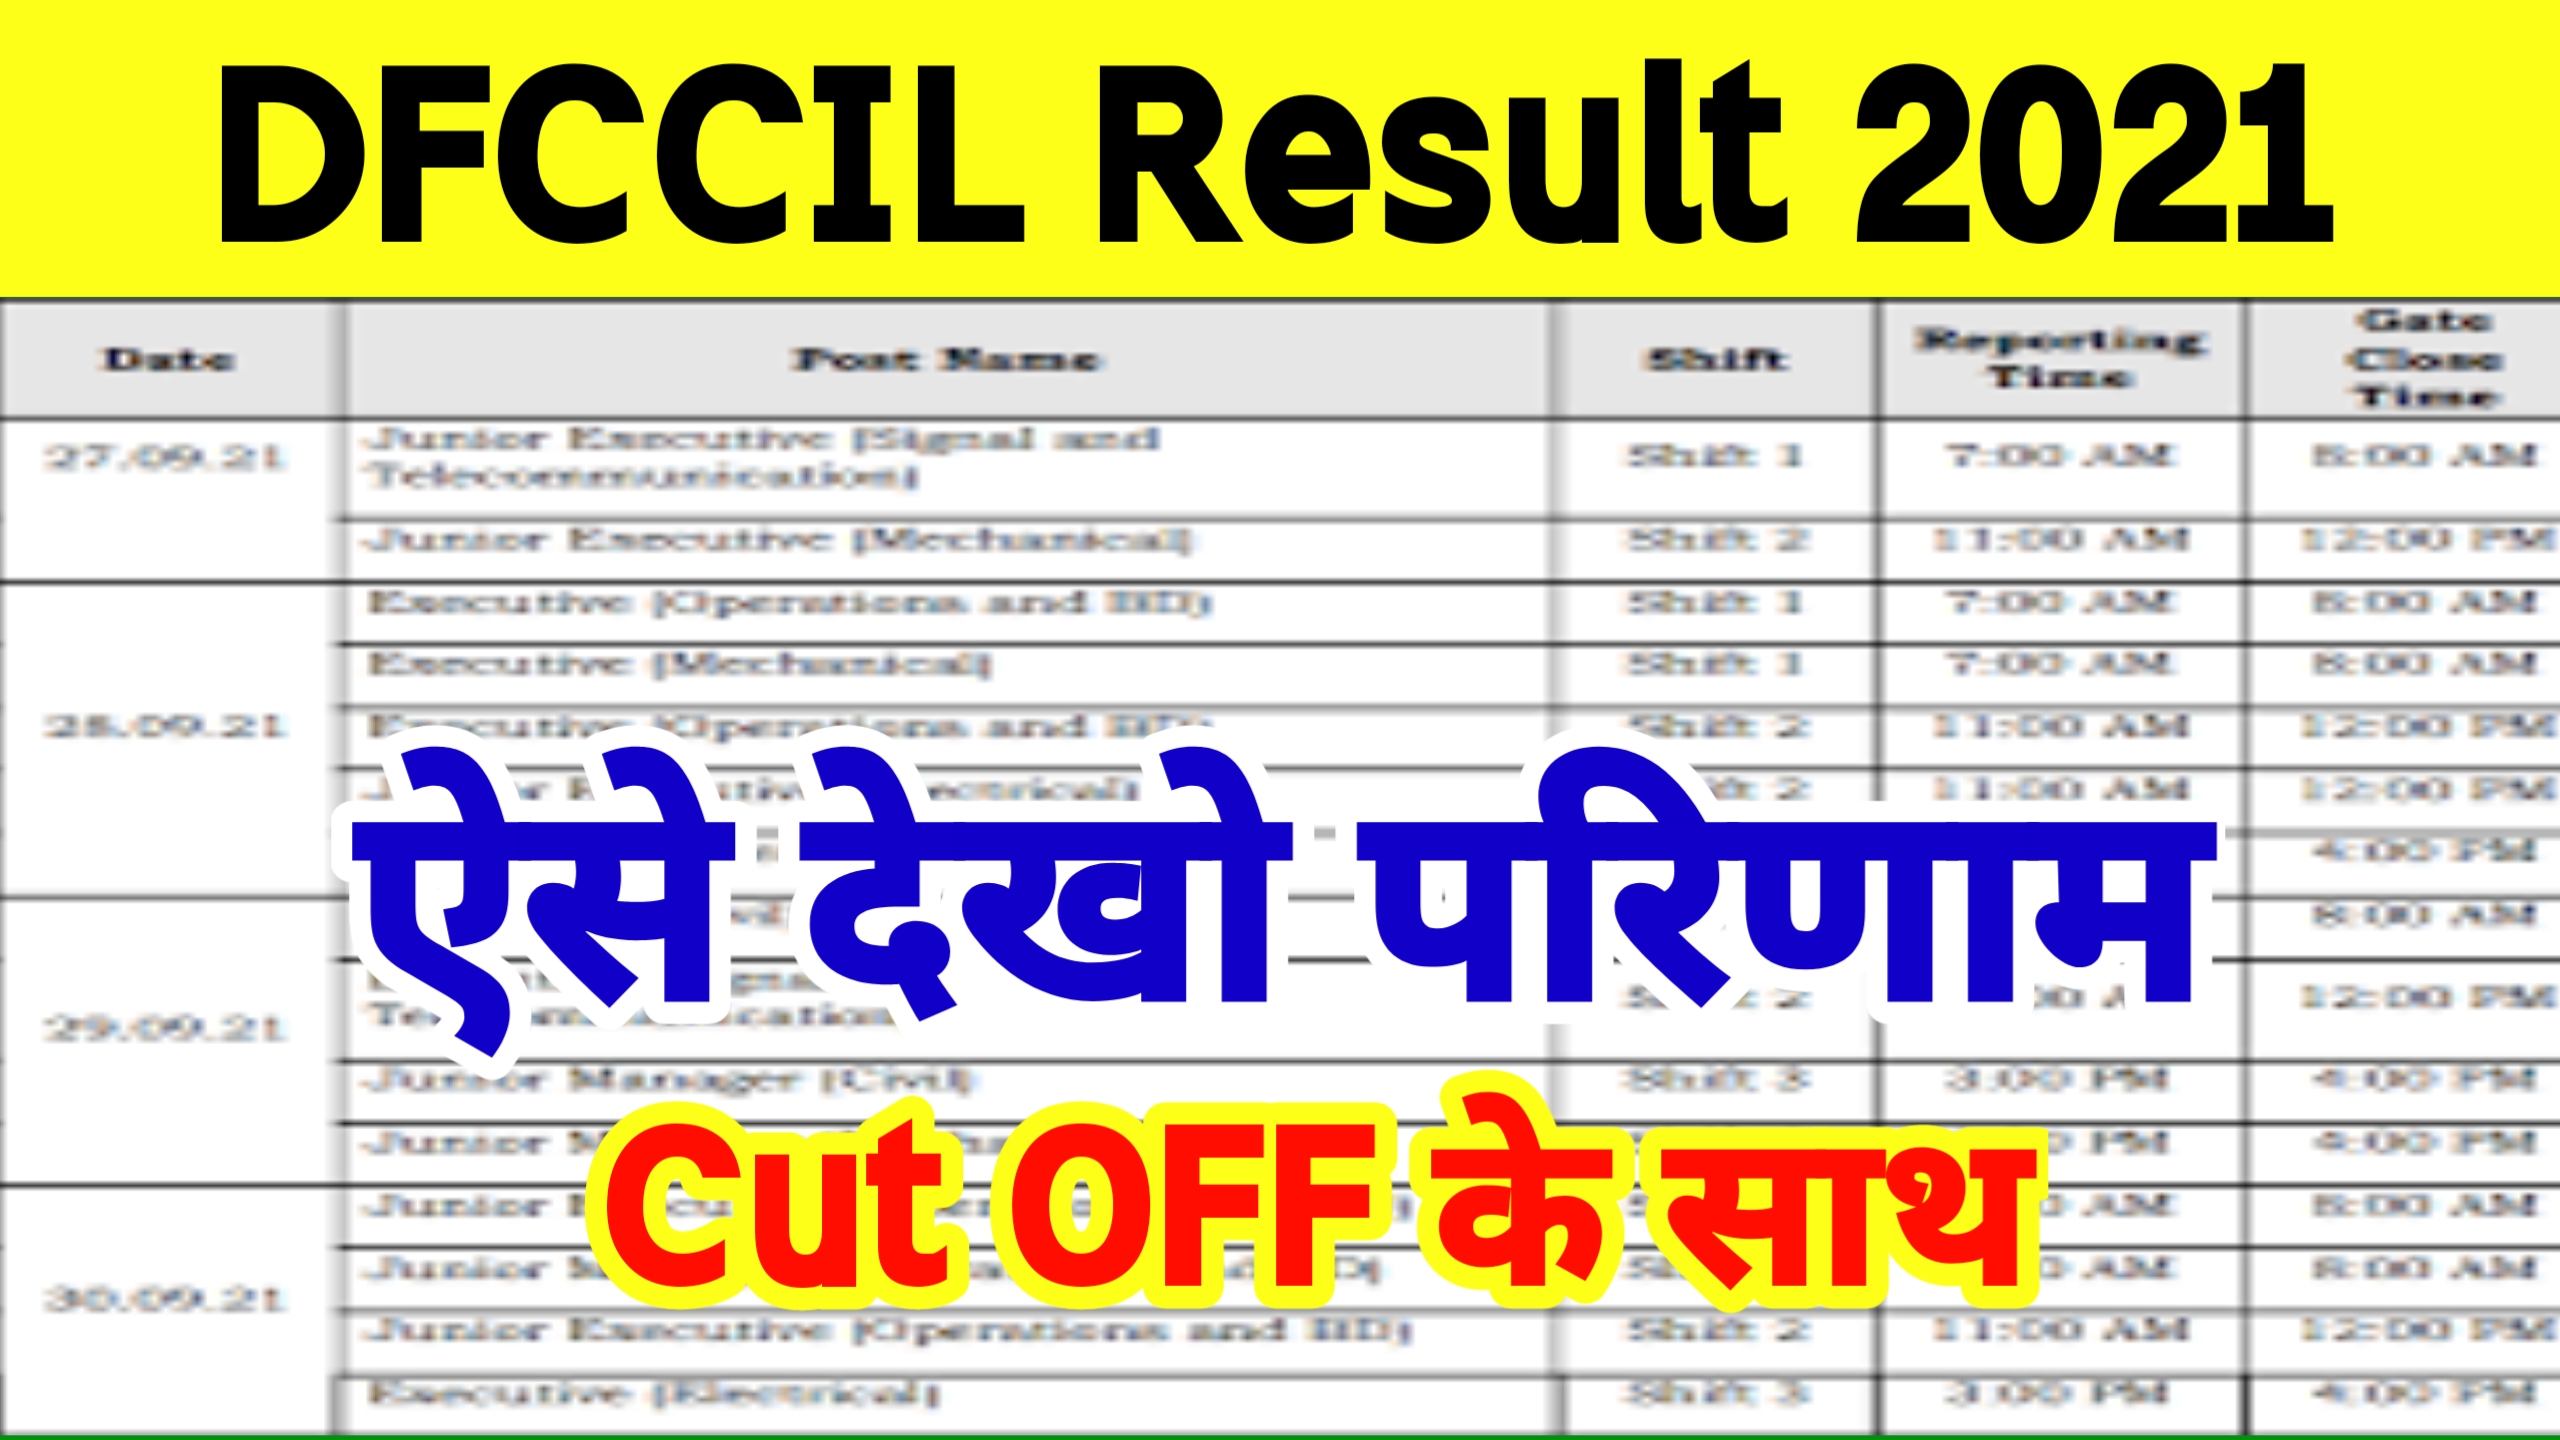 Dfccil Result 2021 Check Now : डेडीकेटेड फ्रेट कॉरिडोर कॉरपोरेशन ऑफ इंडिया का परिणाम ऐसे देखें